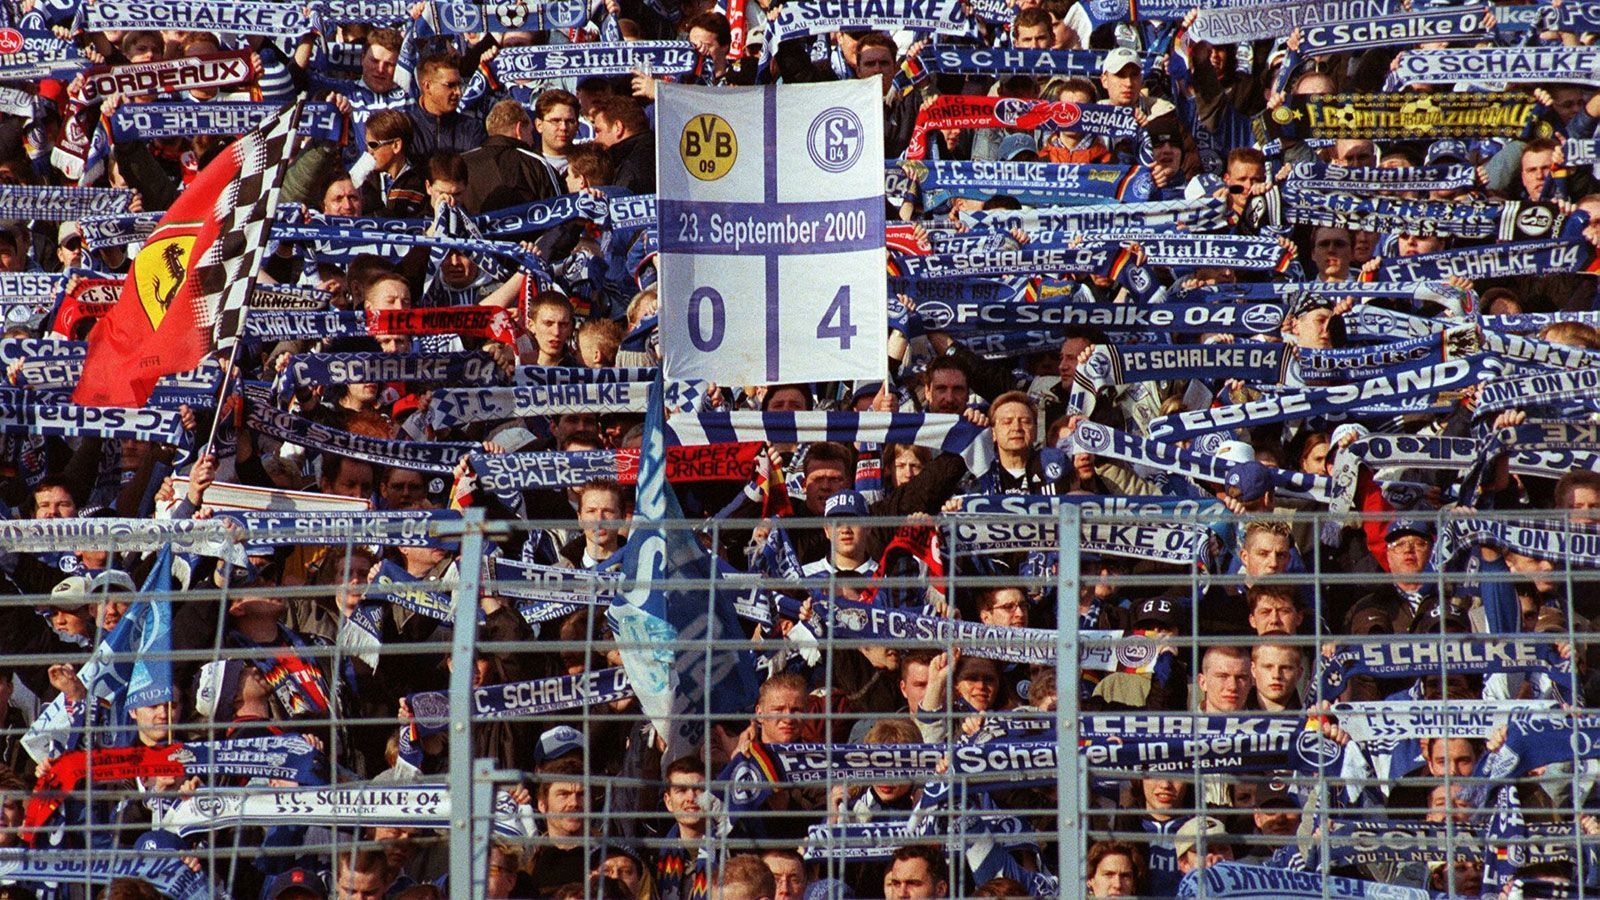 
                <strong>Herbe Klatsche für den BVB</strong><br>
                Im September 2000 demütigt Schalke den BVB im Dortmunder Westfalenstadion - 4:0 heißt es am Ende für die "Königsblauen". S04-Legende Olaf Thon erlaubte sich sogar, ein Trikot des Erzrivalen überzustreifen. Die Schalker feierten den Sieg lange.
              